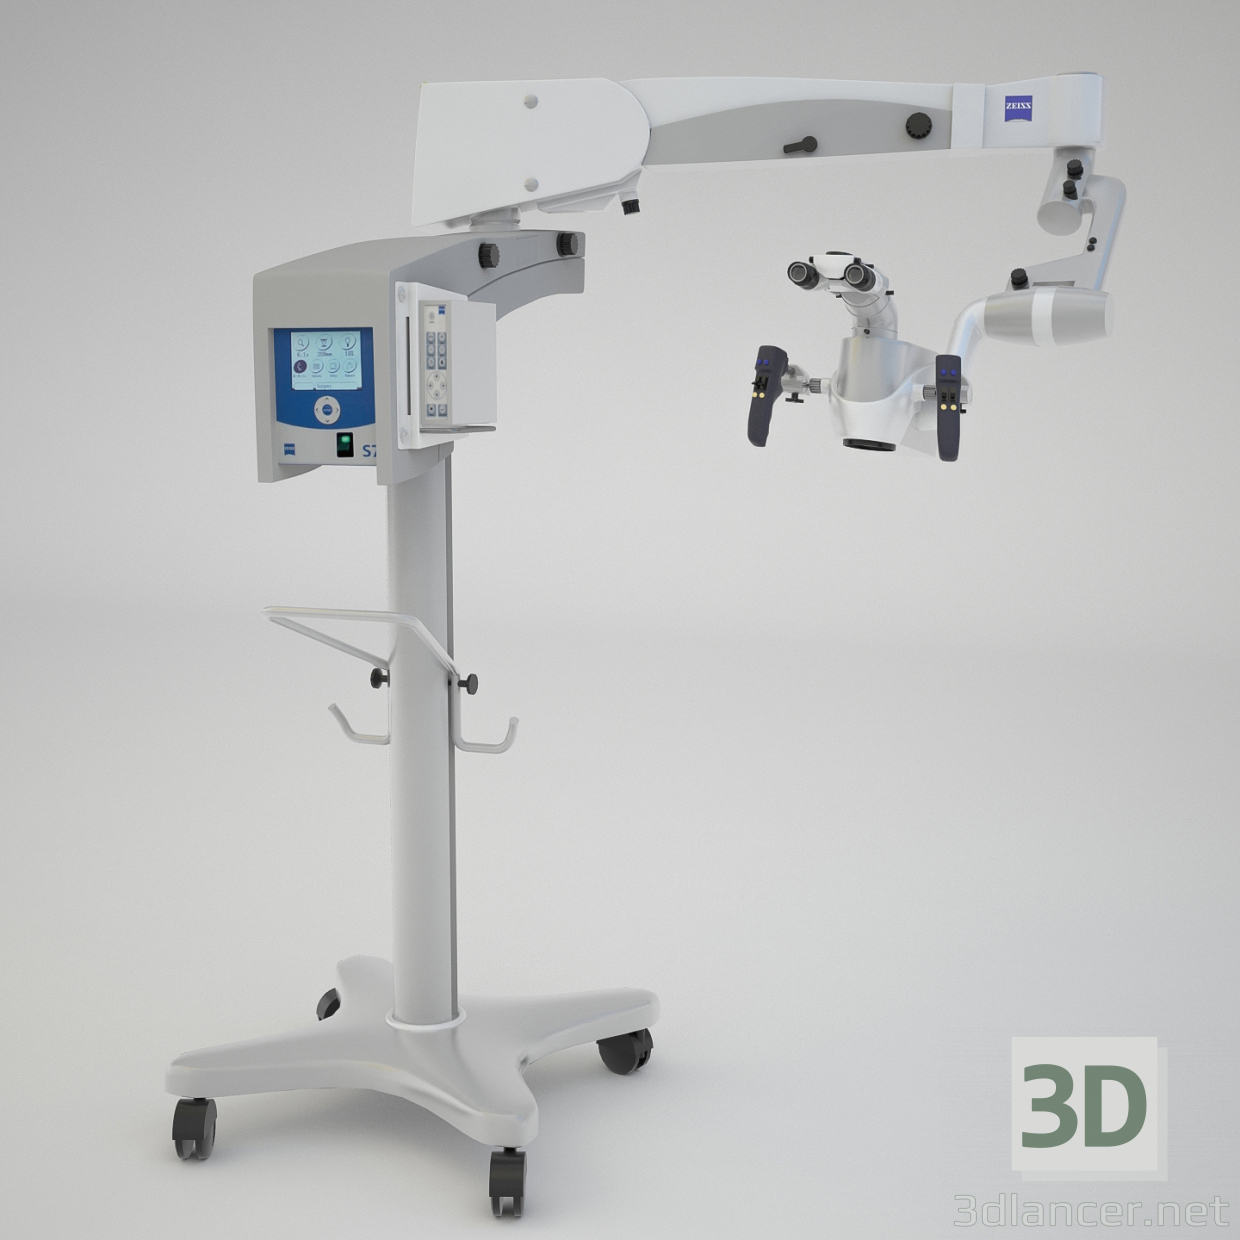 3d Dental microscope "Opmi proergo zeiss" model buy - render